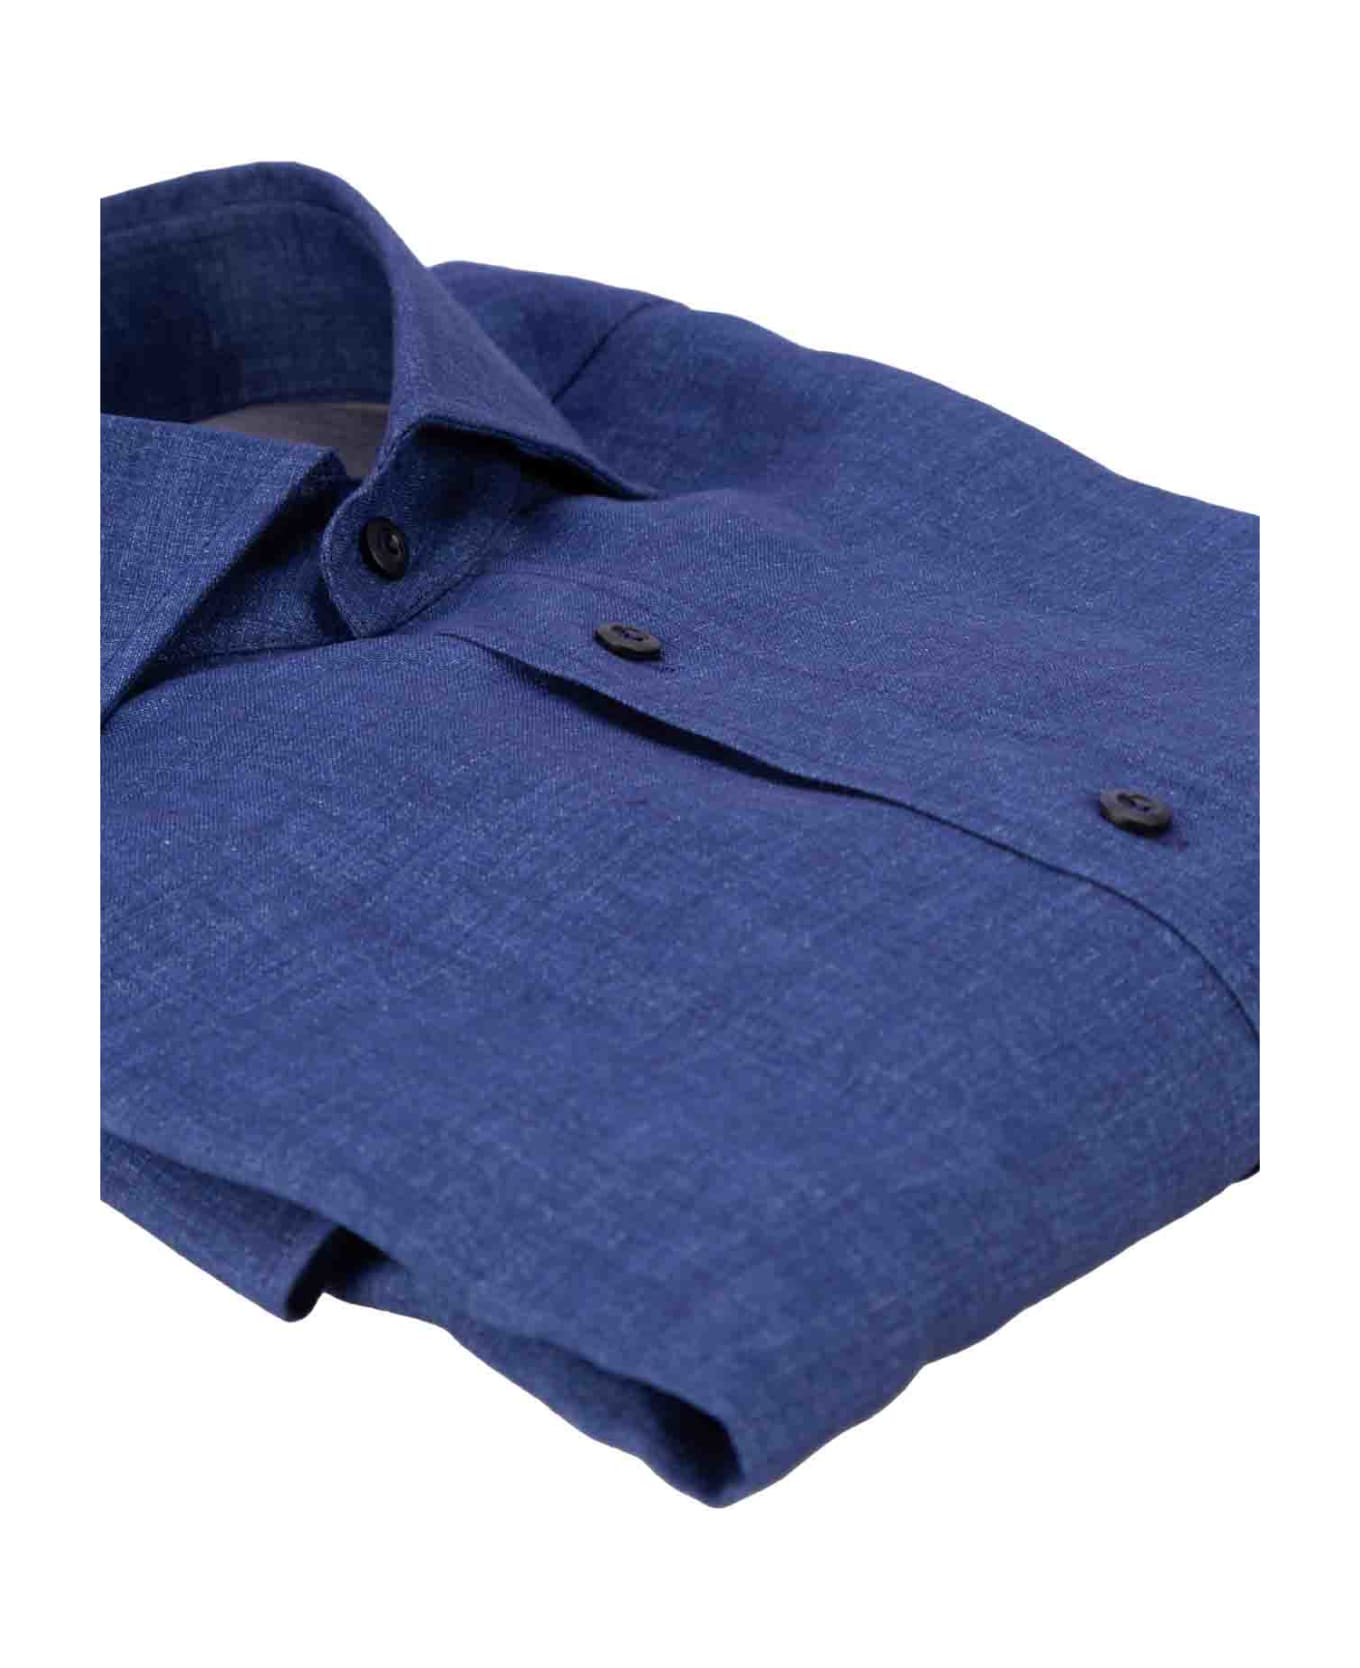 Brunello Cucinelli Linen Shirt - Blue シャツ